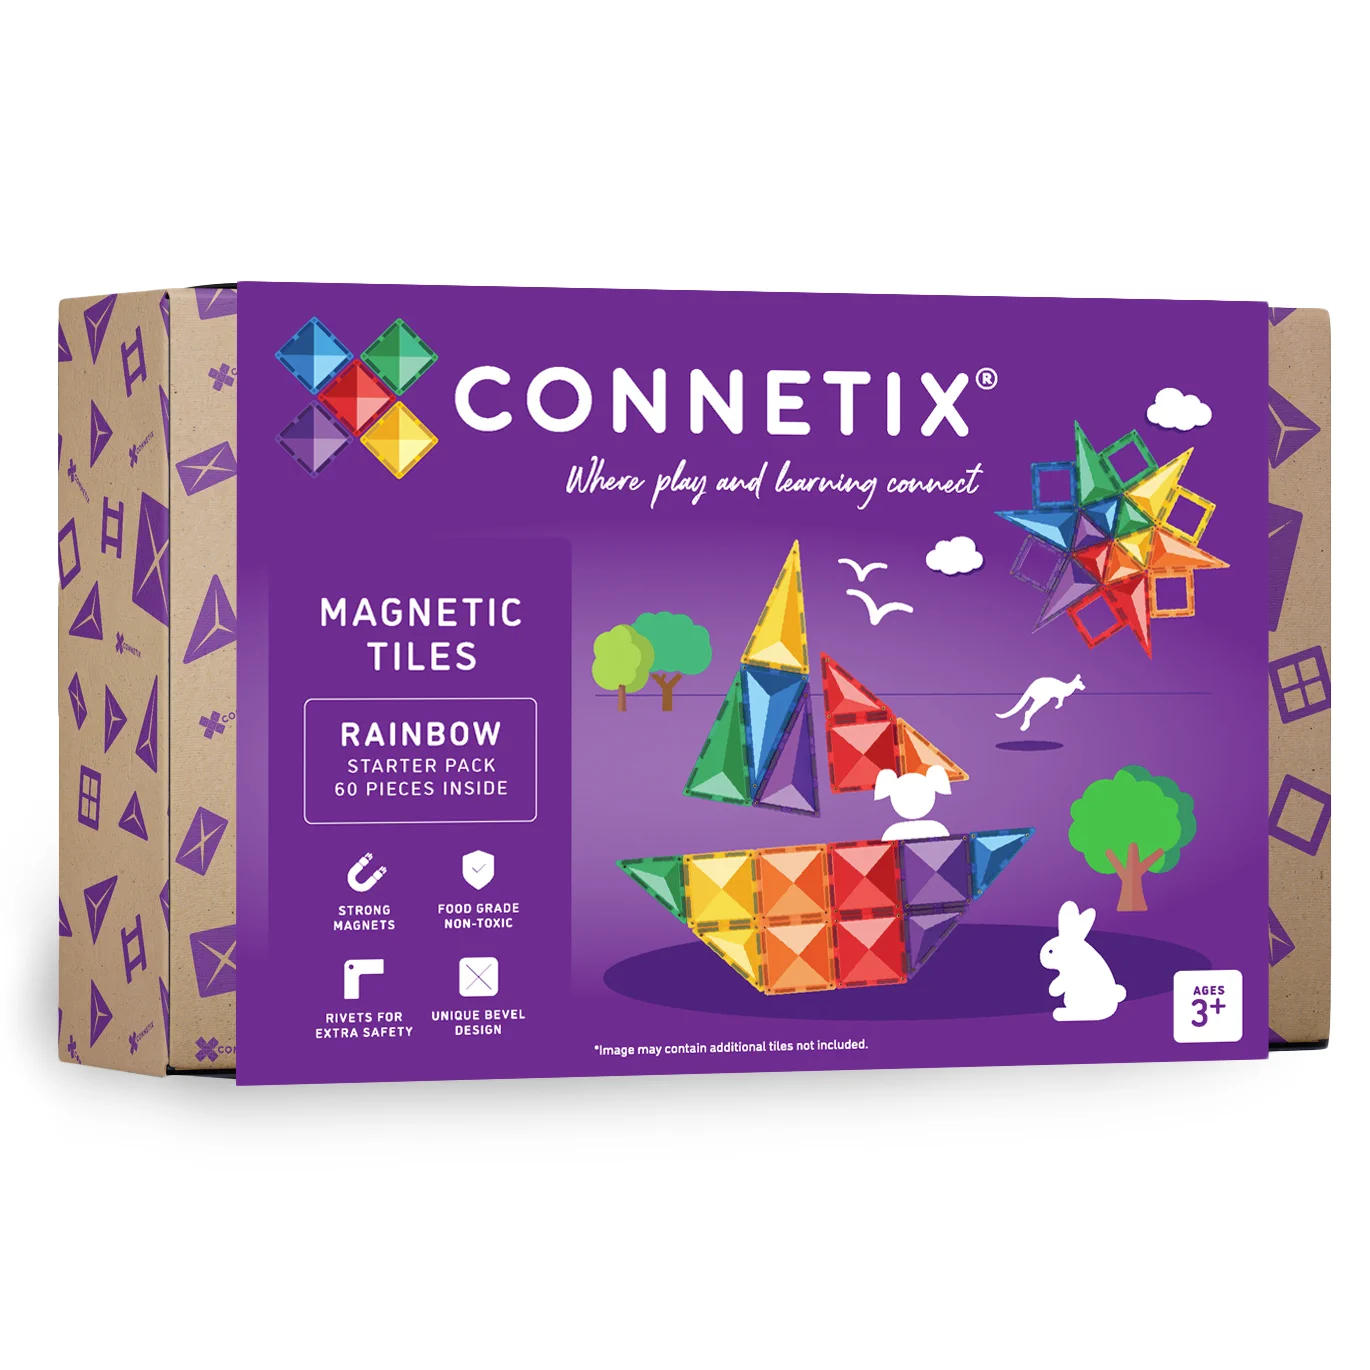 Connetix konstrukcijski komplet magnetnih ploščic v mavričnih barvah.